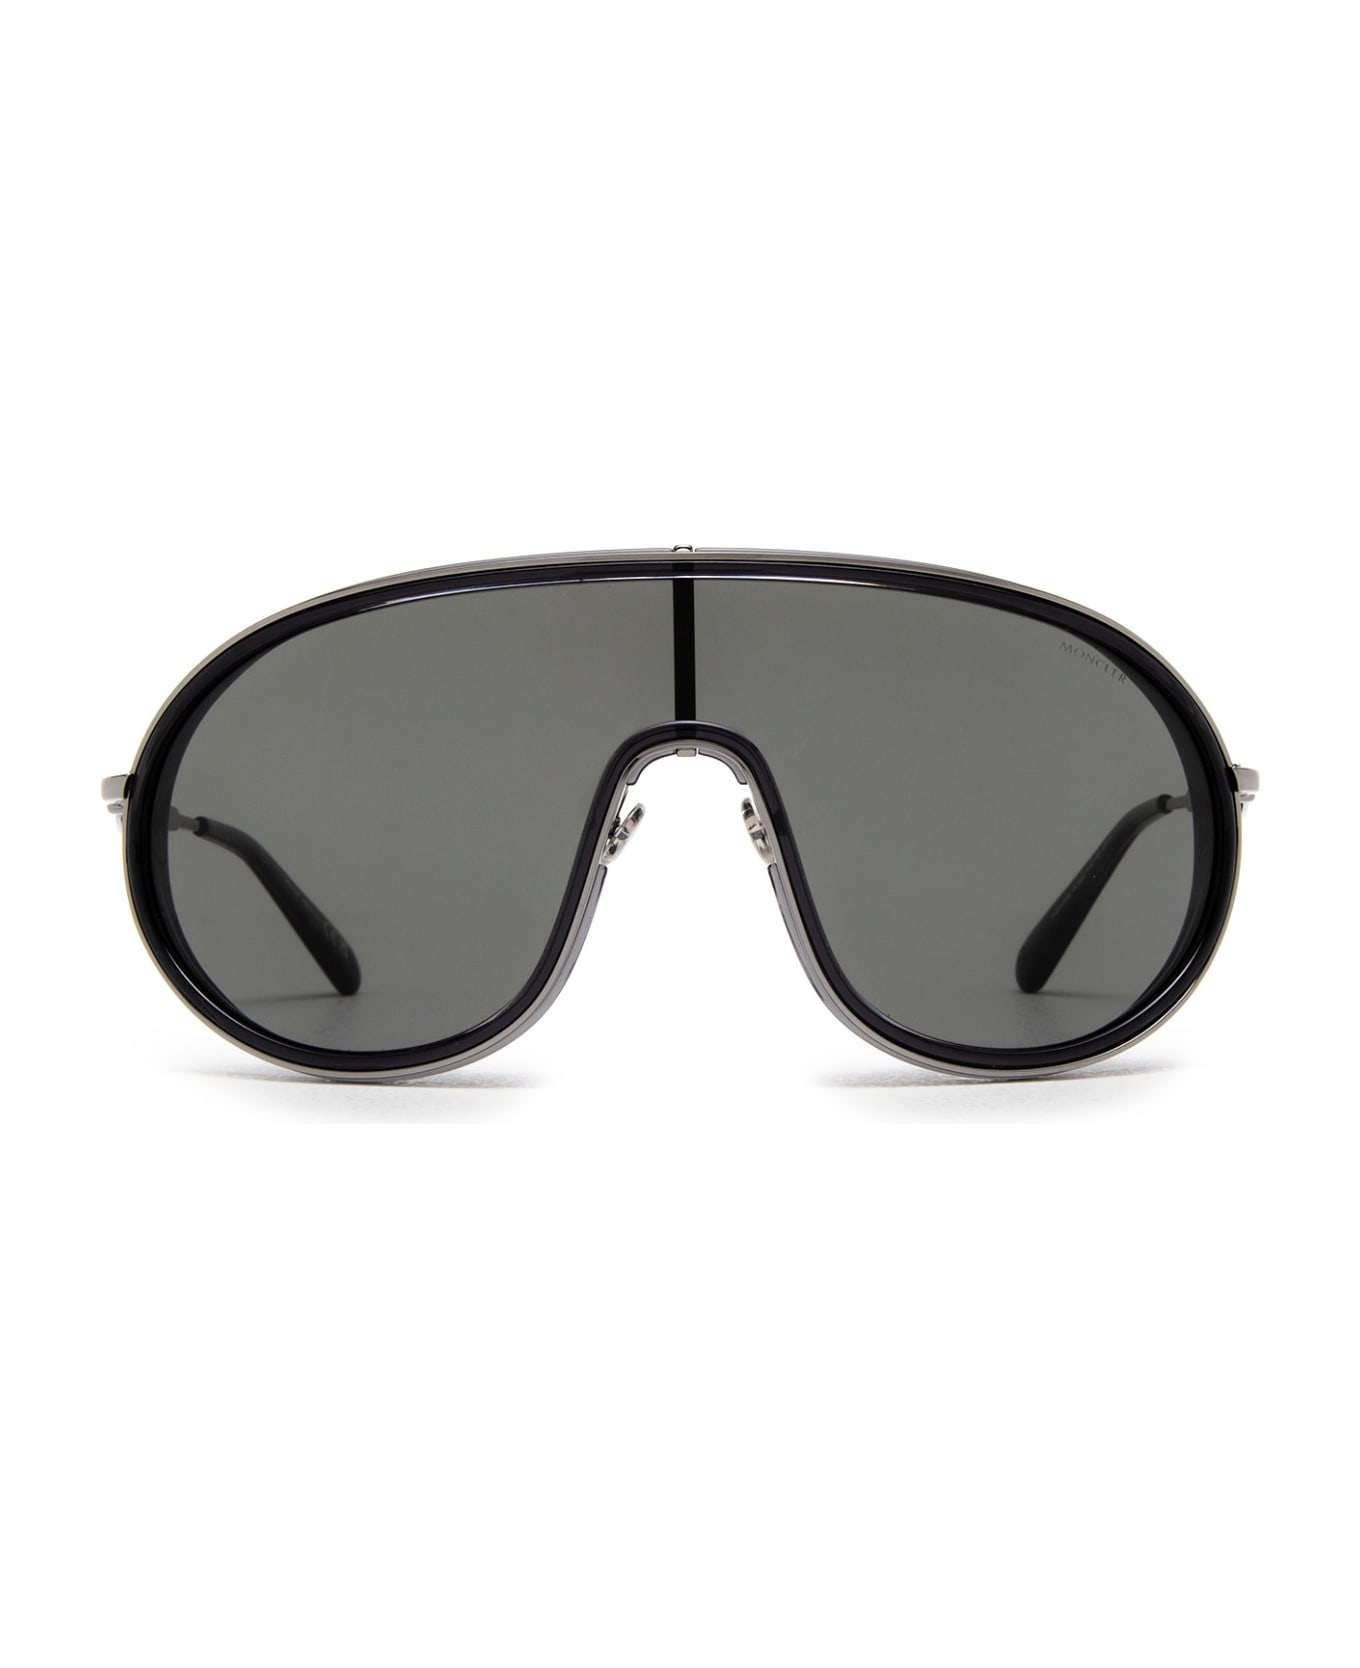 Moncler Eyewear Ml0222 Shiny Black Sunglasses - Shiny Black